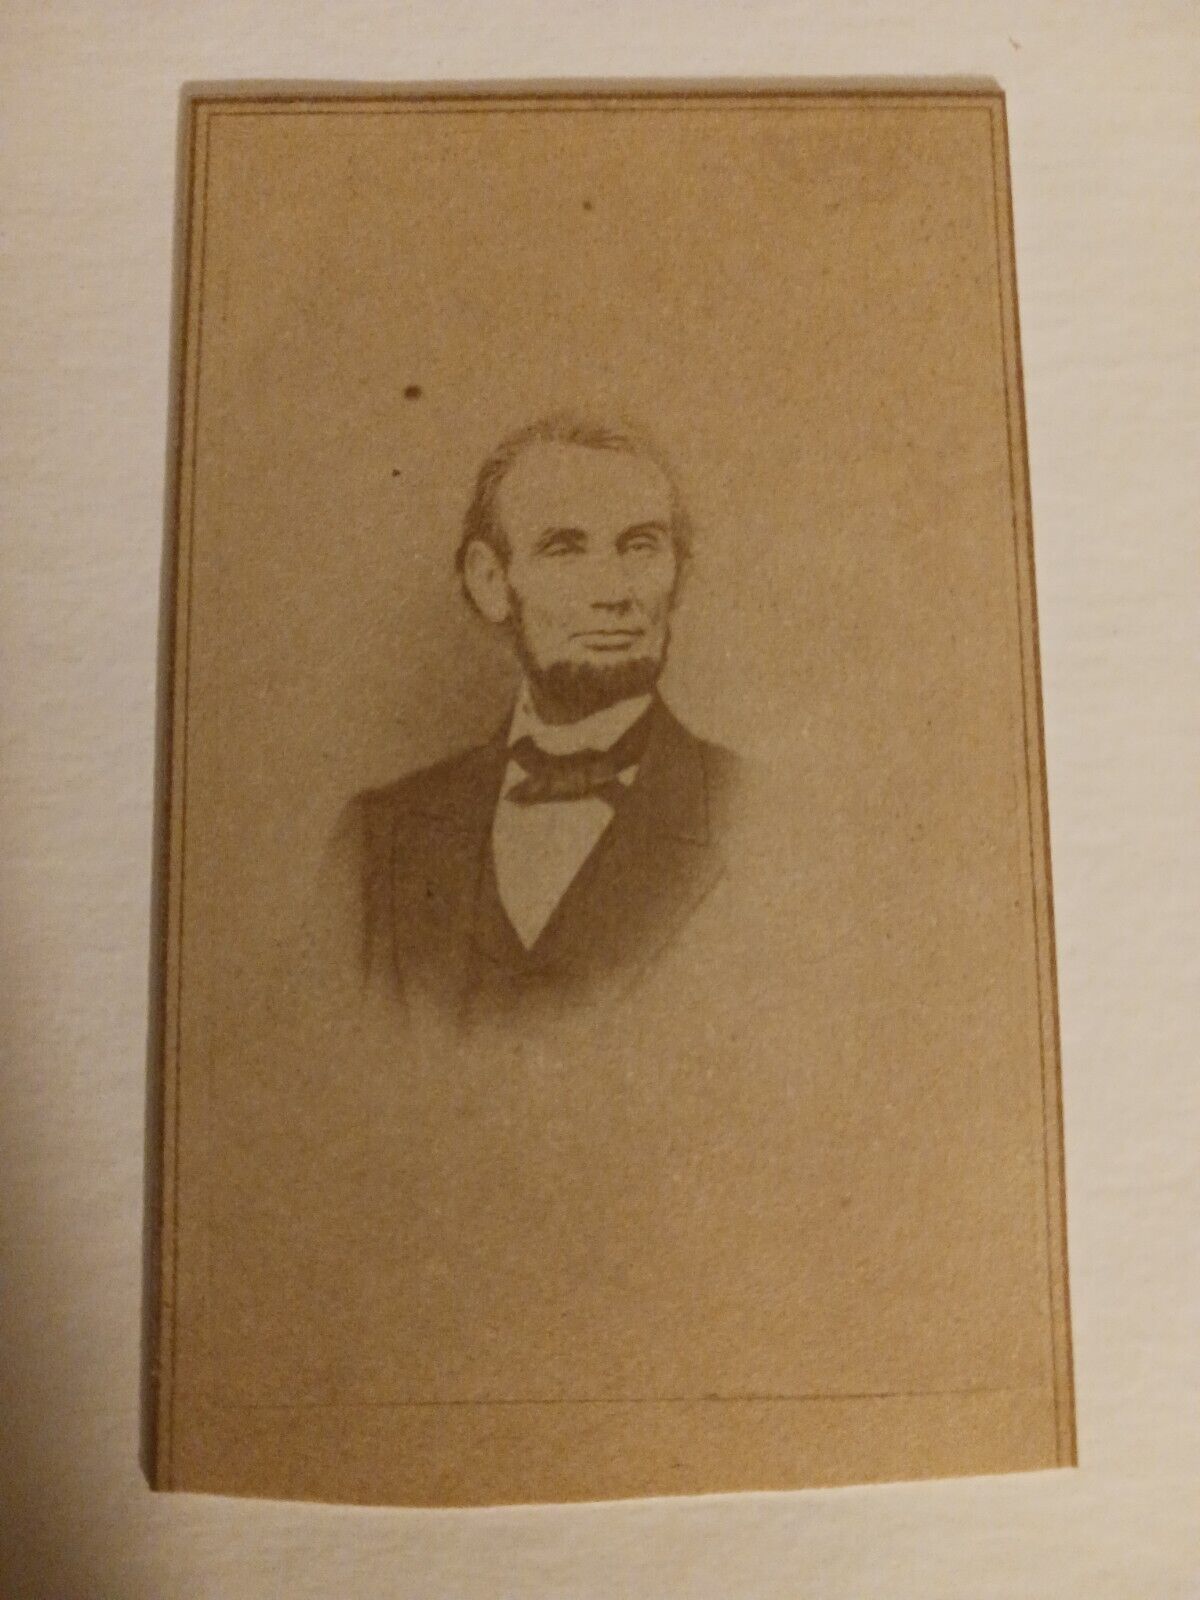 RARE CDV of President Abraham Lincoln - Photograph taken February 1864